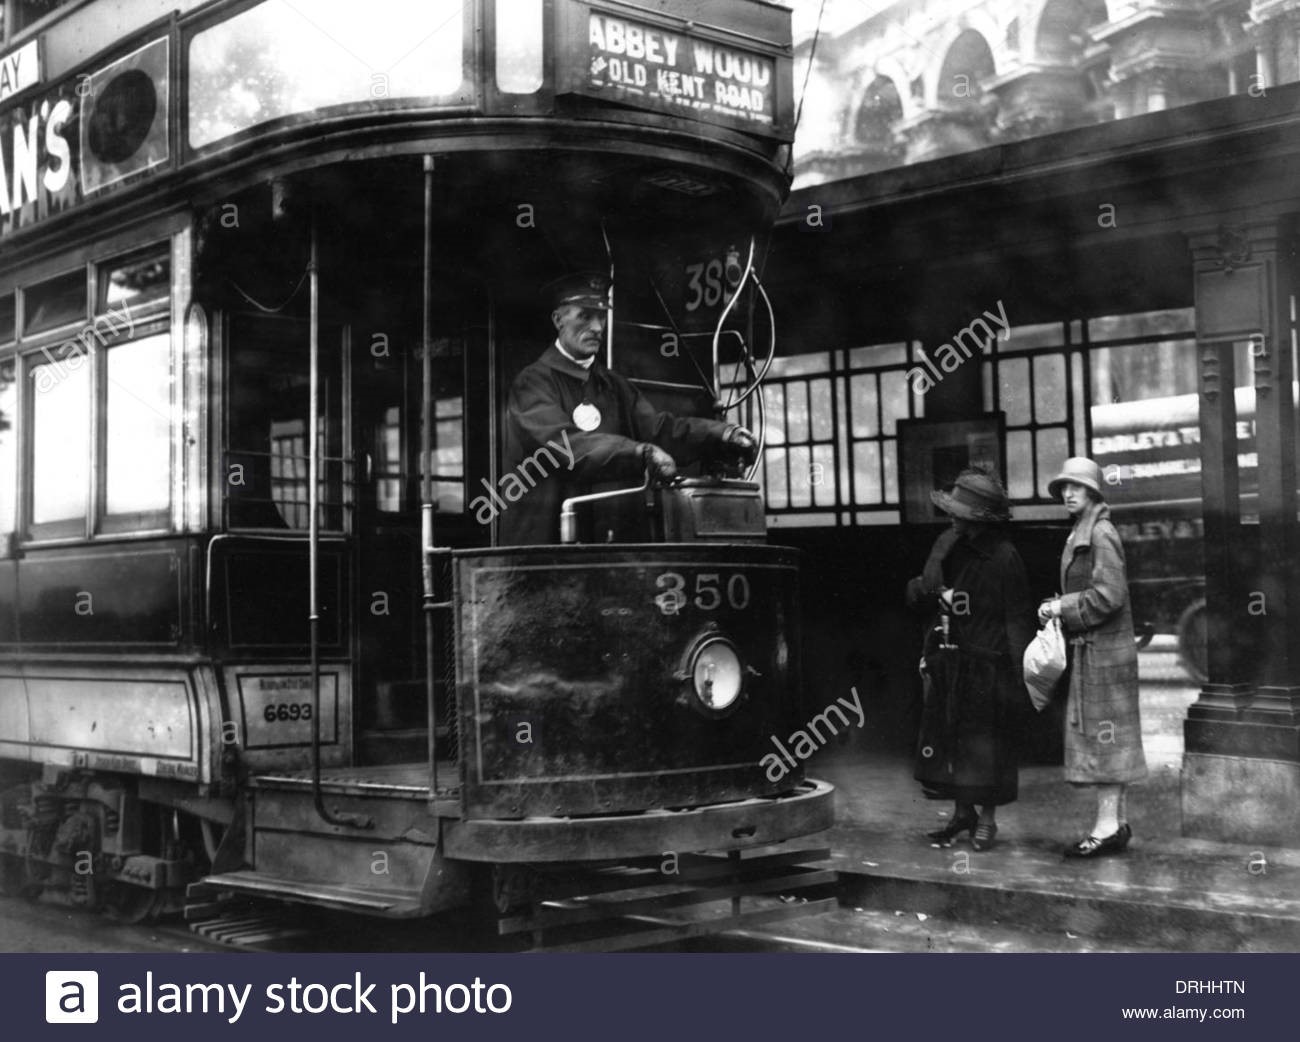 A tram outside Blackfriars tram terminal in London.jpg